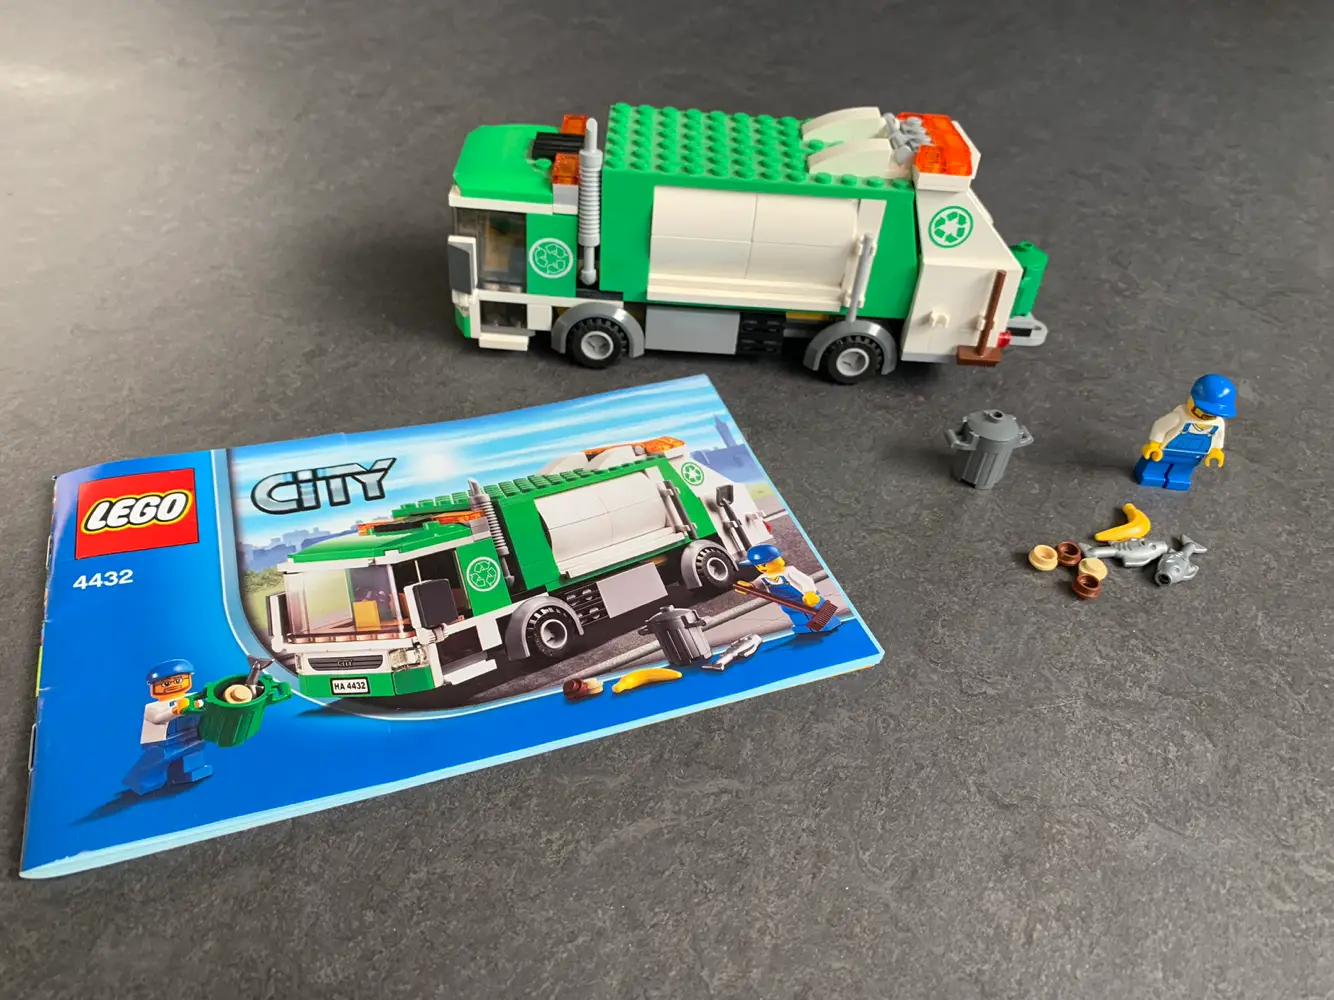 Køb Lego City skraldebil 4432 af Anders på Reshopper · Shop secondhand til børn, mor og bolig